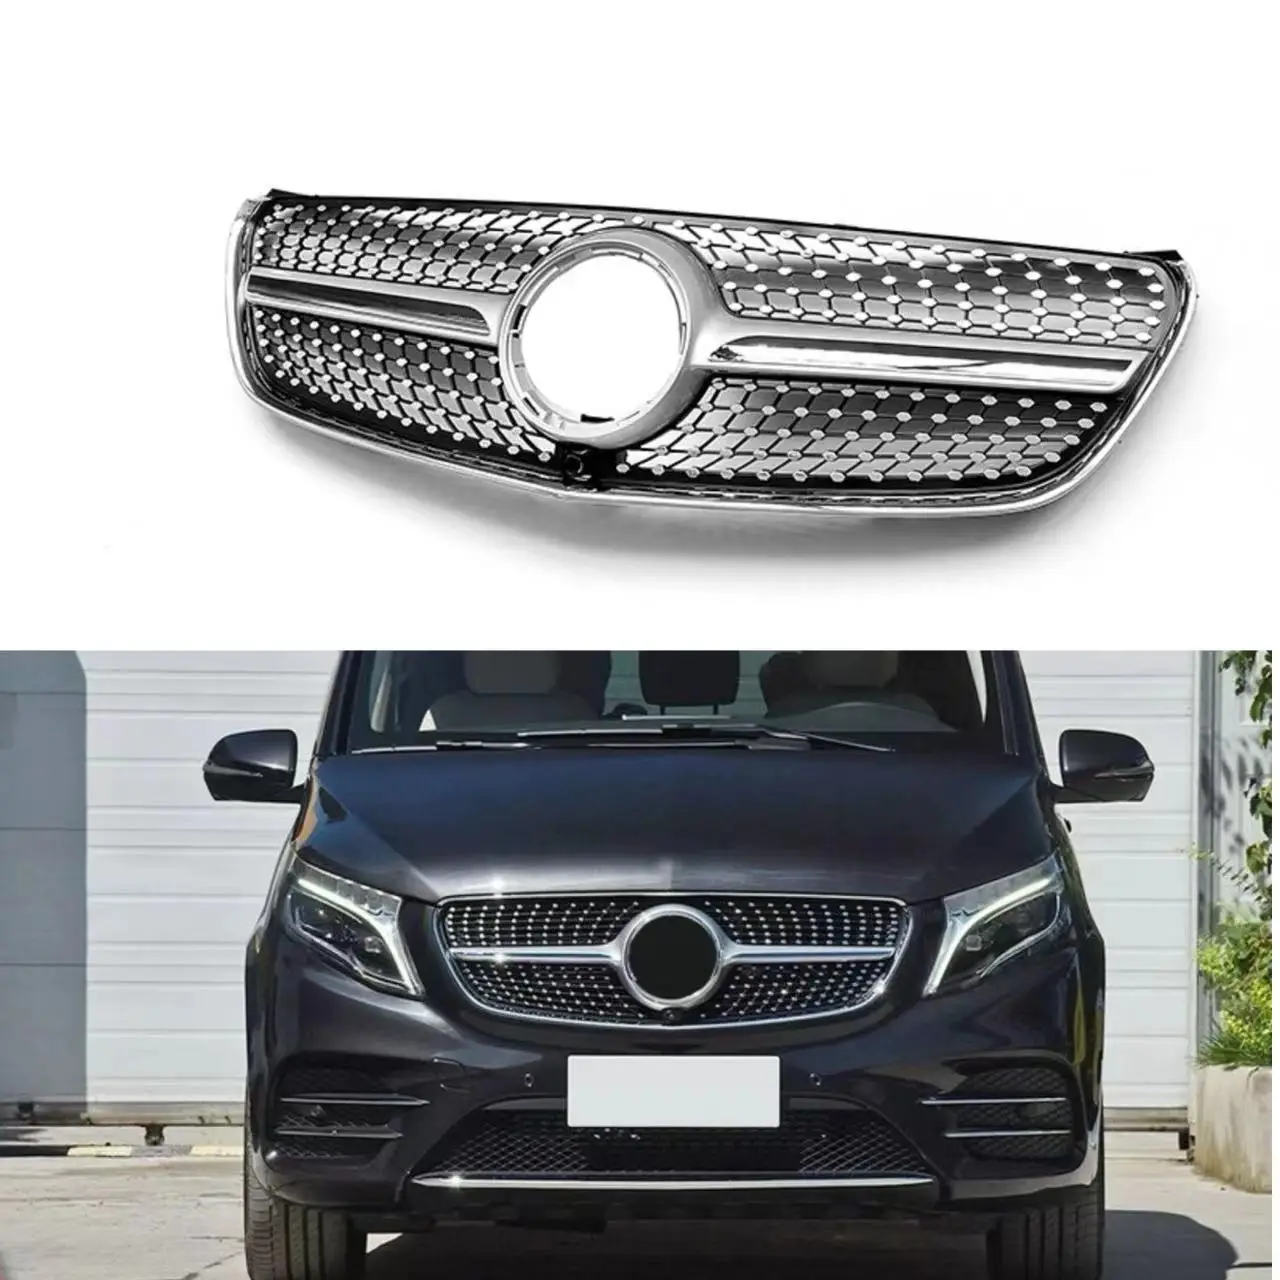 

Глянцевые черные решетки радиатора для Mercedes Benz V Class 2016-2020, V250/V260 W447, гоночные решетки, бамперы, комплект кузова, капот